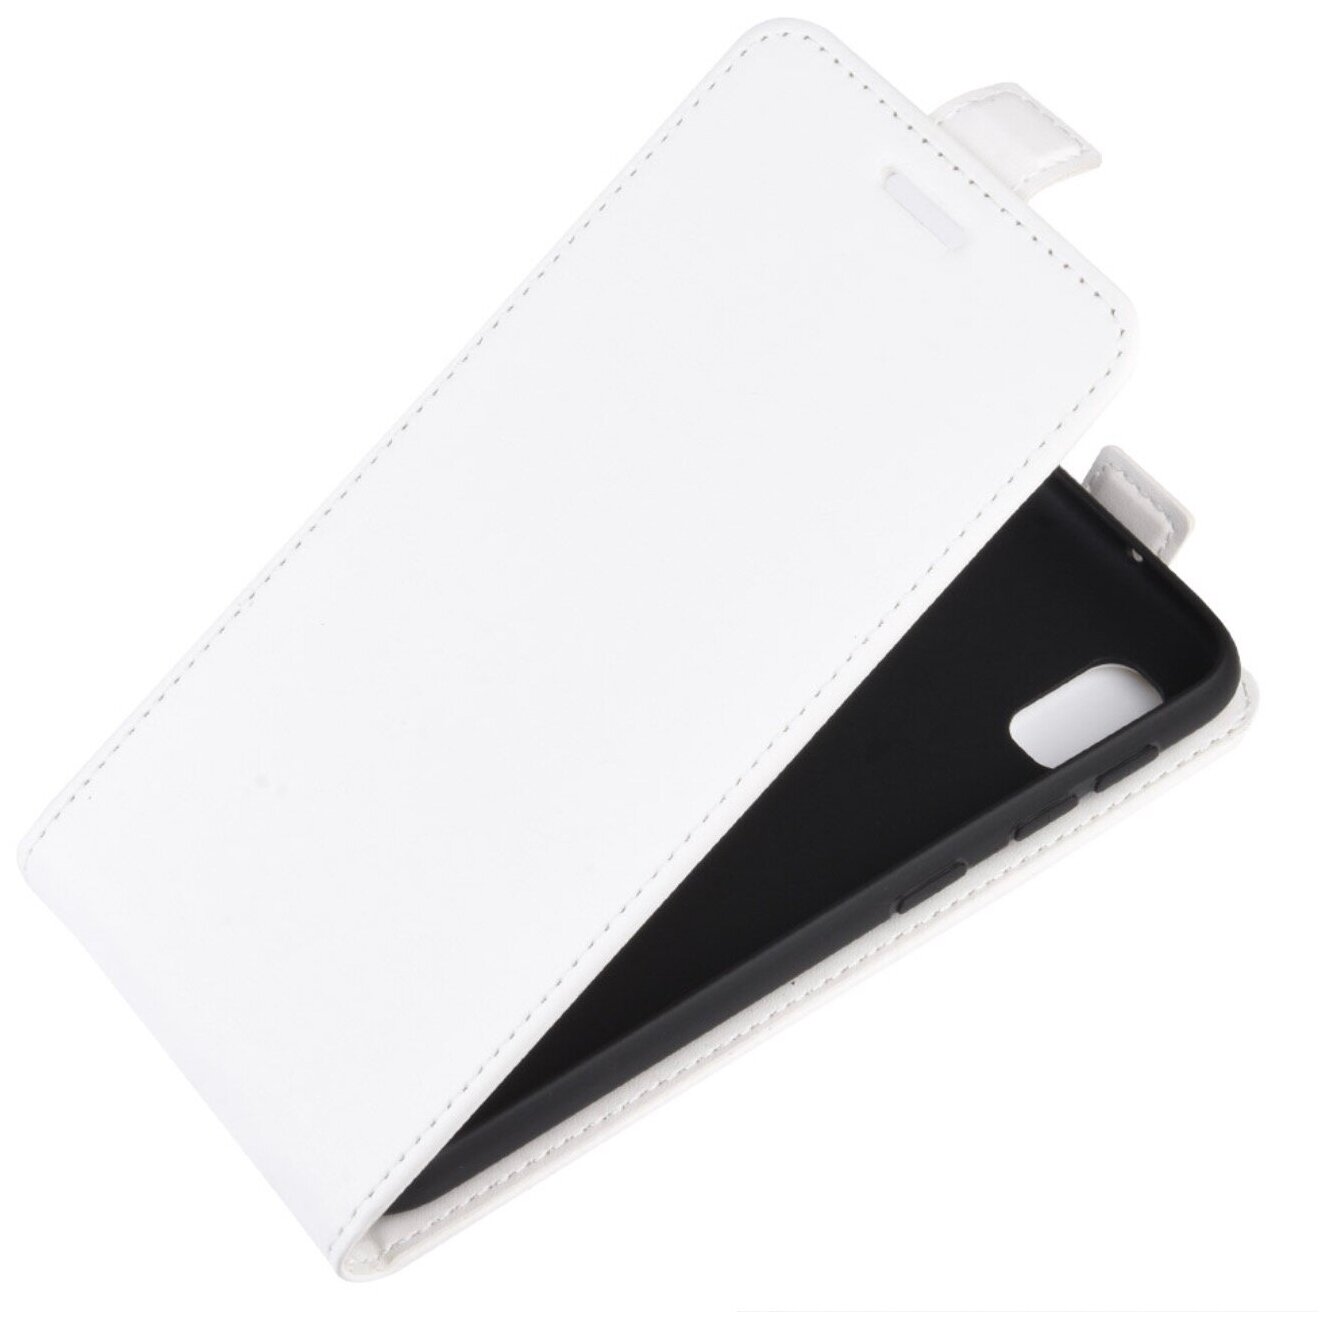 Чехол-флип MyPads для Samsung Galaxy Grand Neo GT-I9060/DS вертикальный откидной белый